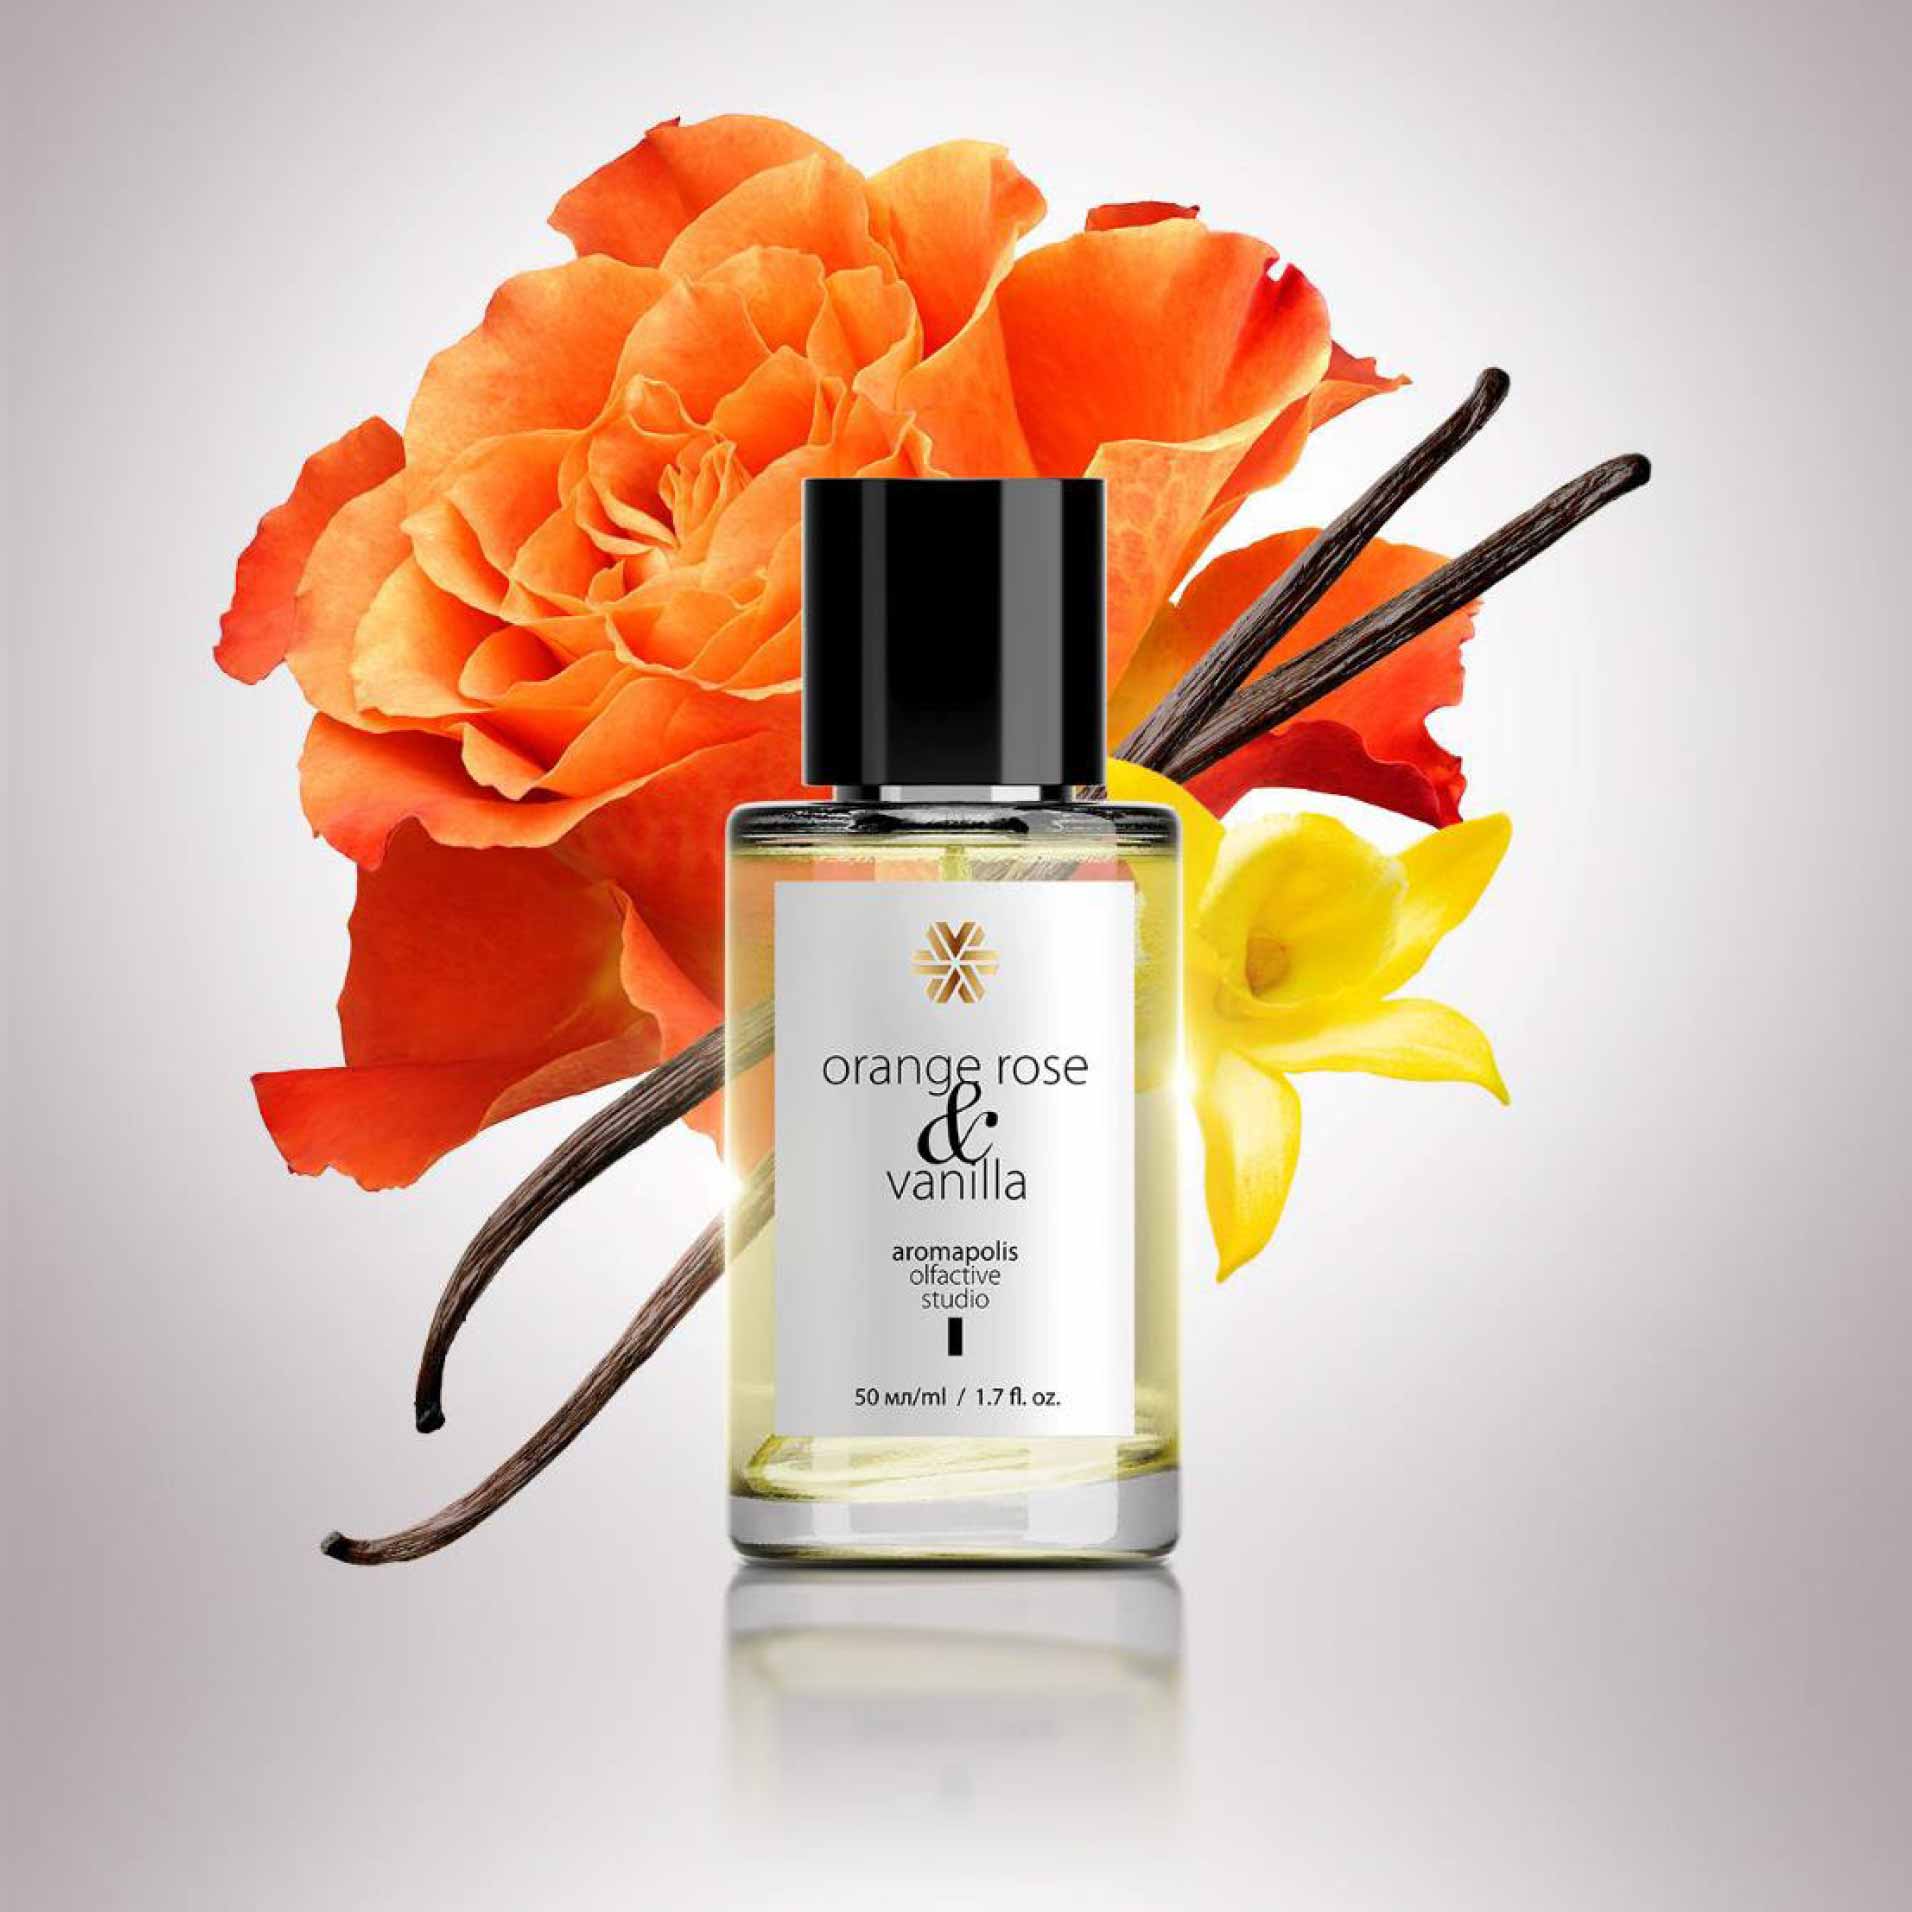 Изображение отсутствует.
			Купить Orange Rose & Vanilla, парфюмерная вода, 50 мл - Aromapolis Olfactive Studio //  // 